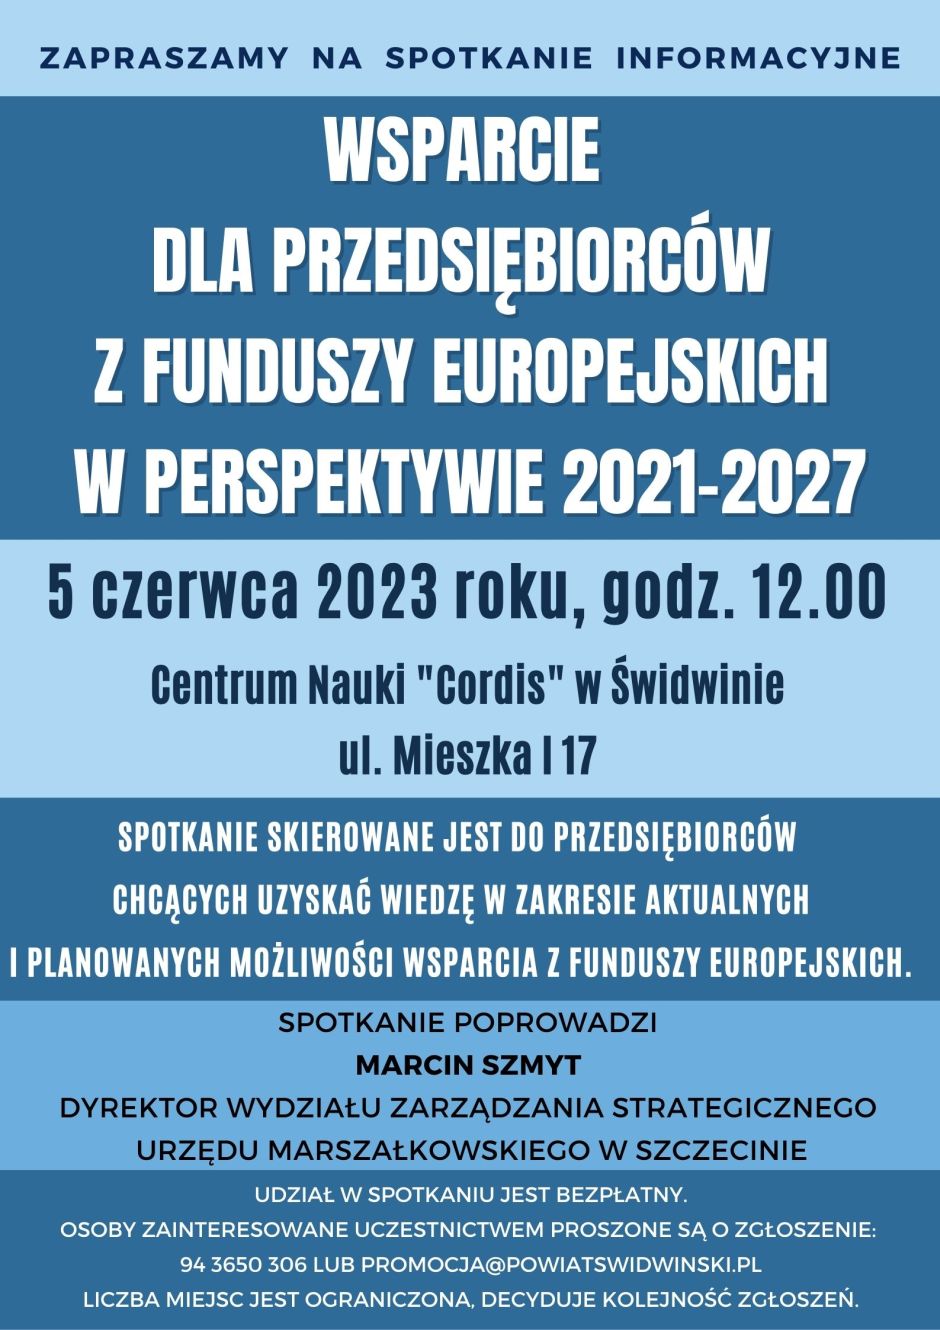 "Wsparcie dla przedsiębiorców z Funduszy Europejskich w perspektywie 2021-2027"